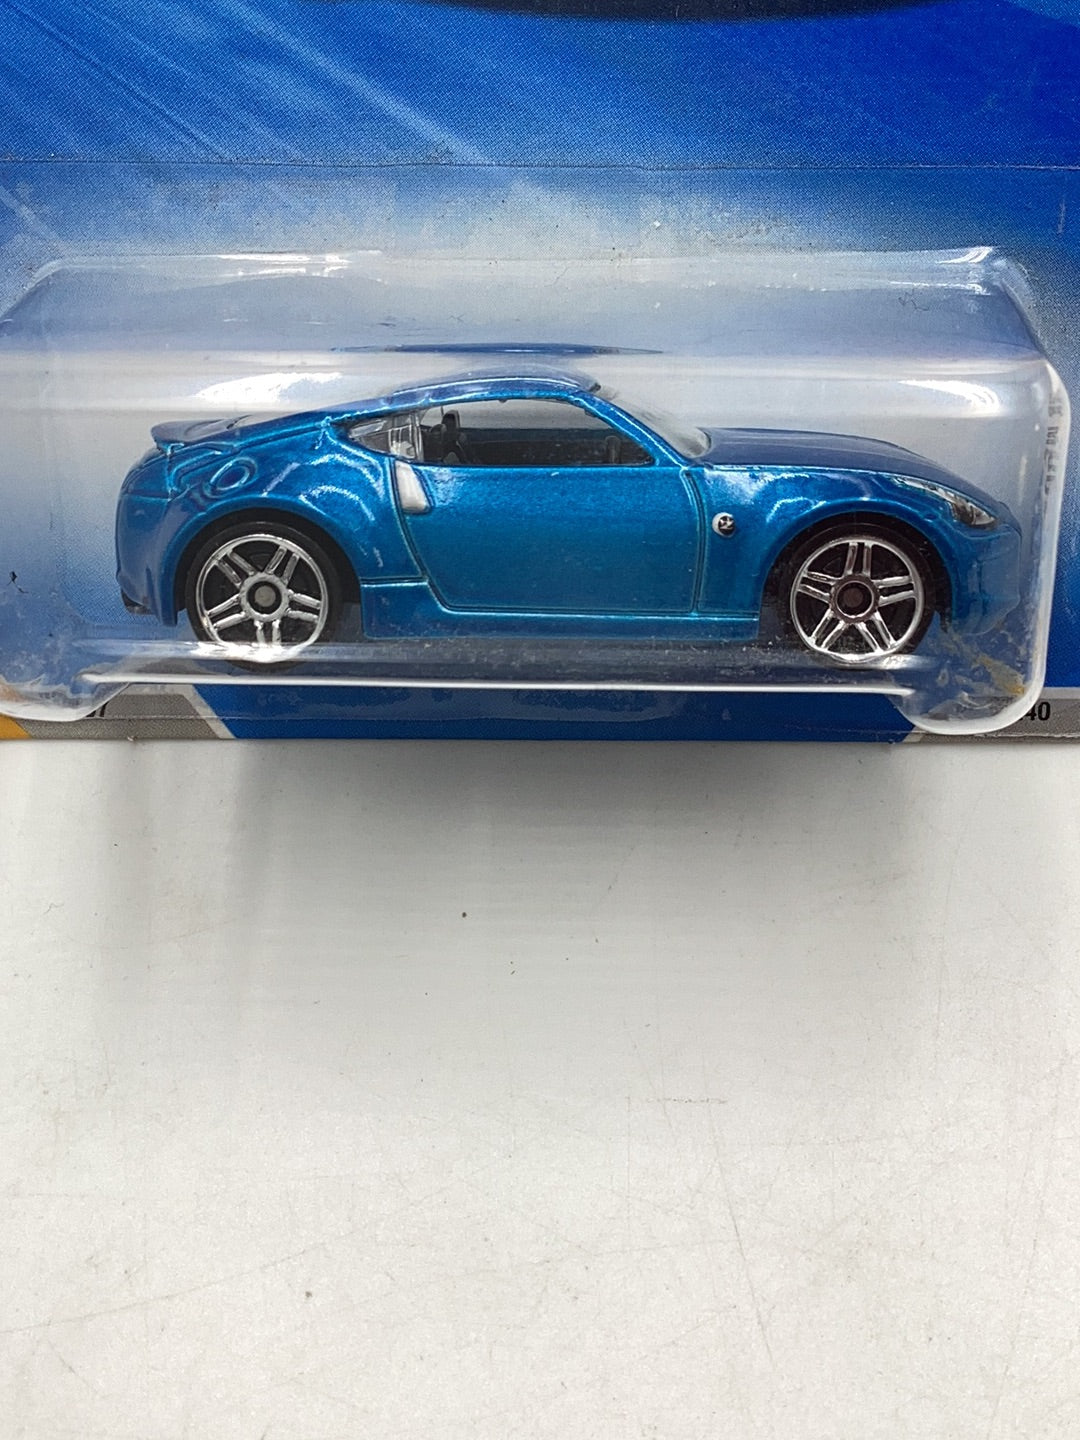 2010 Hot wheels #37 Nissan 370Z blue 97B